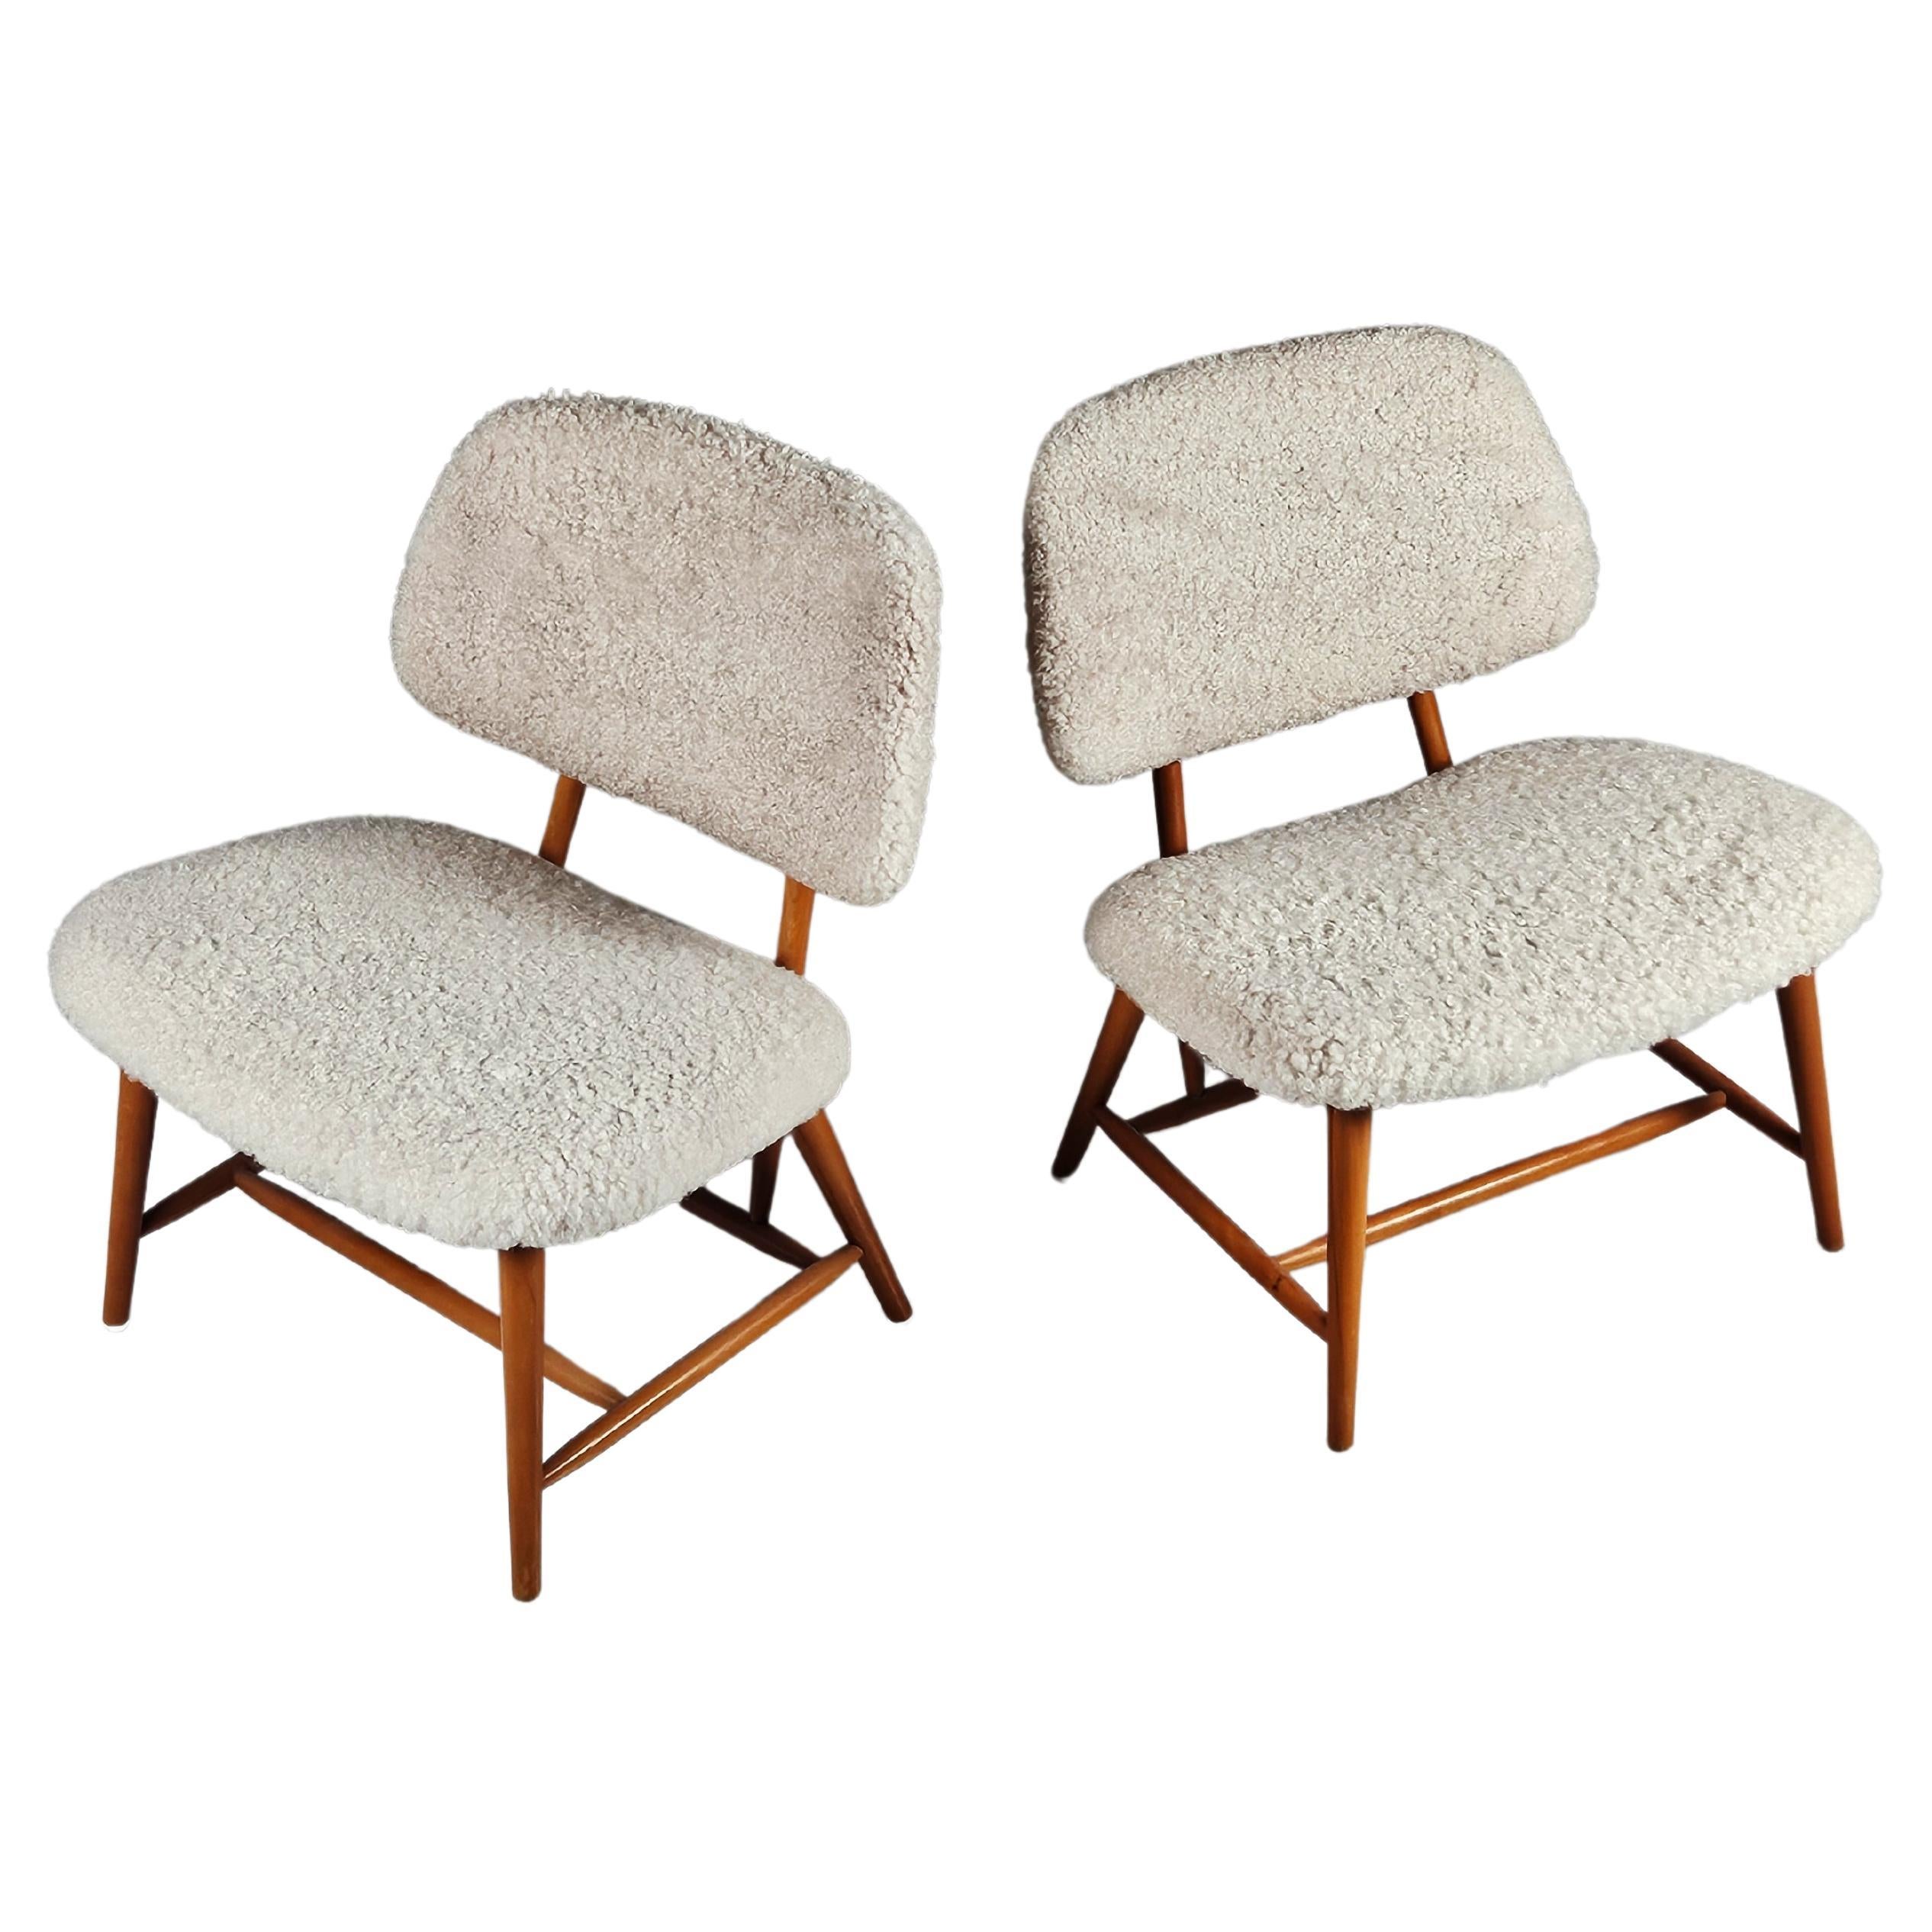 Scandinavian modern 'Teve' chairs by Alf Svensson for Bra Bohag, Sweden, 1950s For Sale